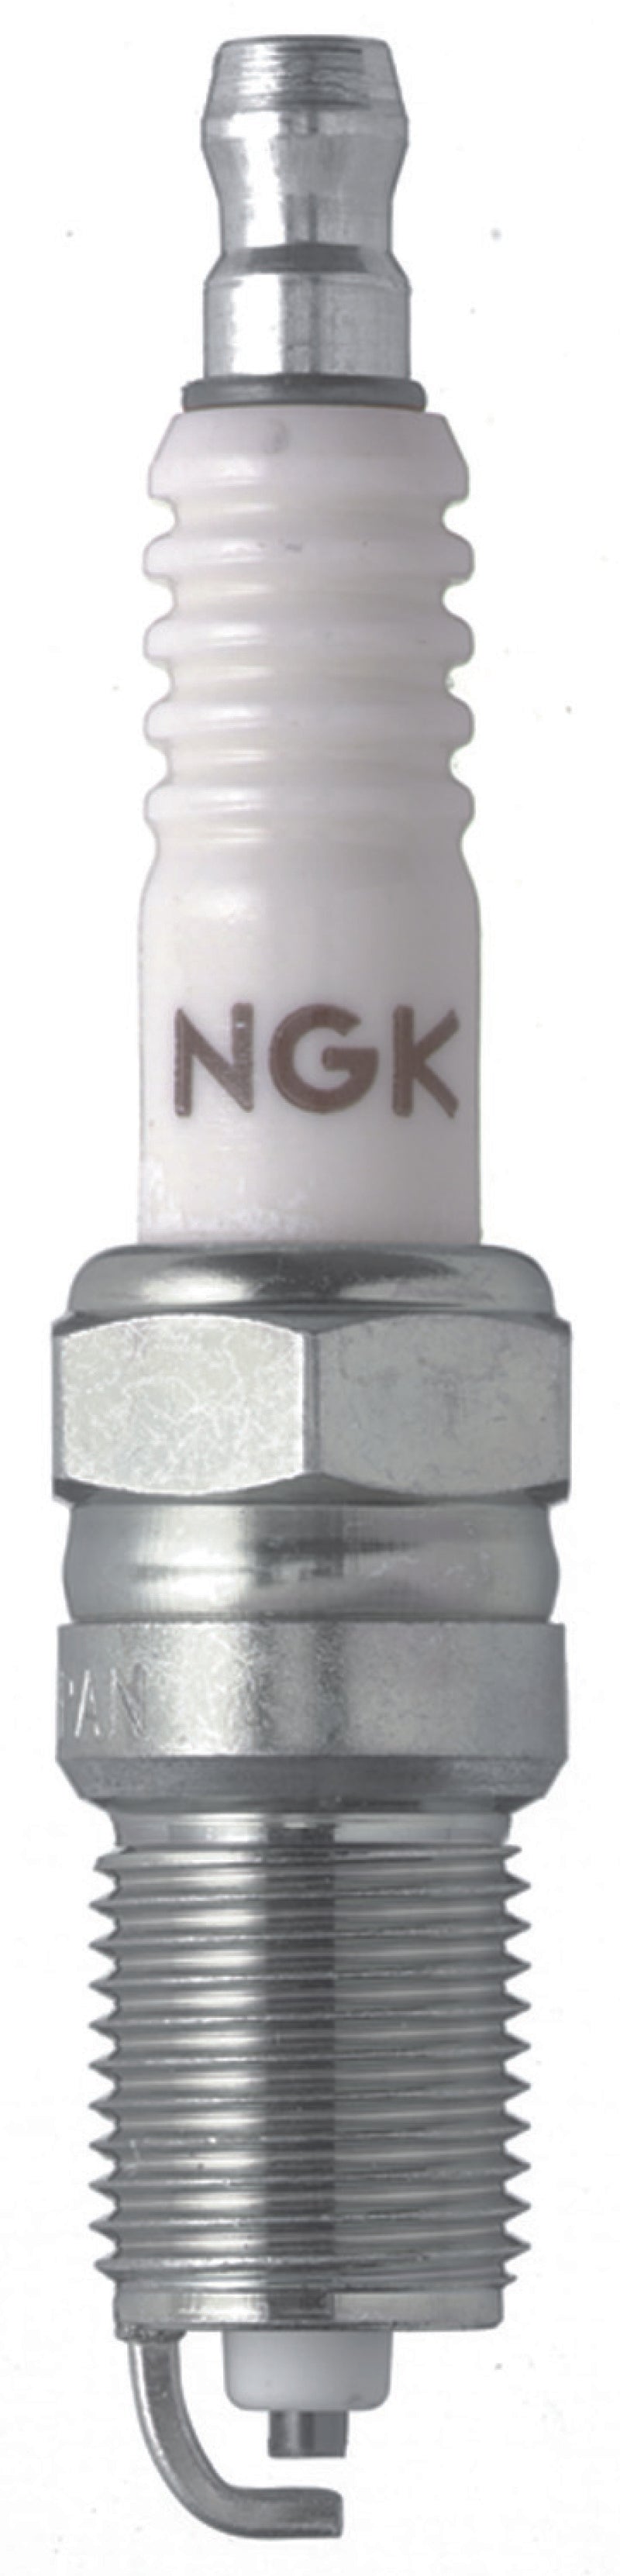 NGK Nickel Spark Plug Box of 4 (R5724-8).